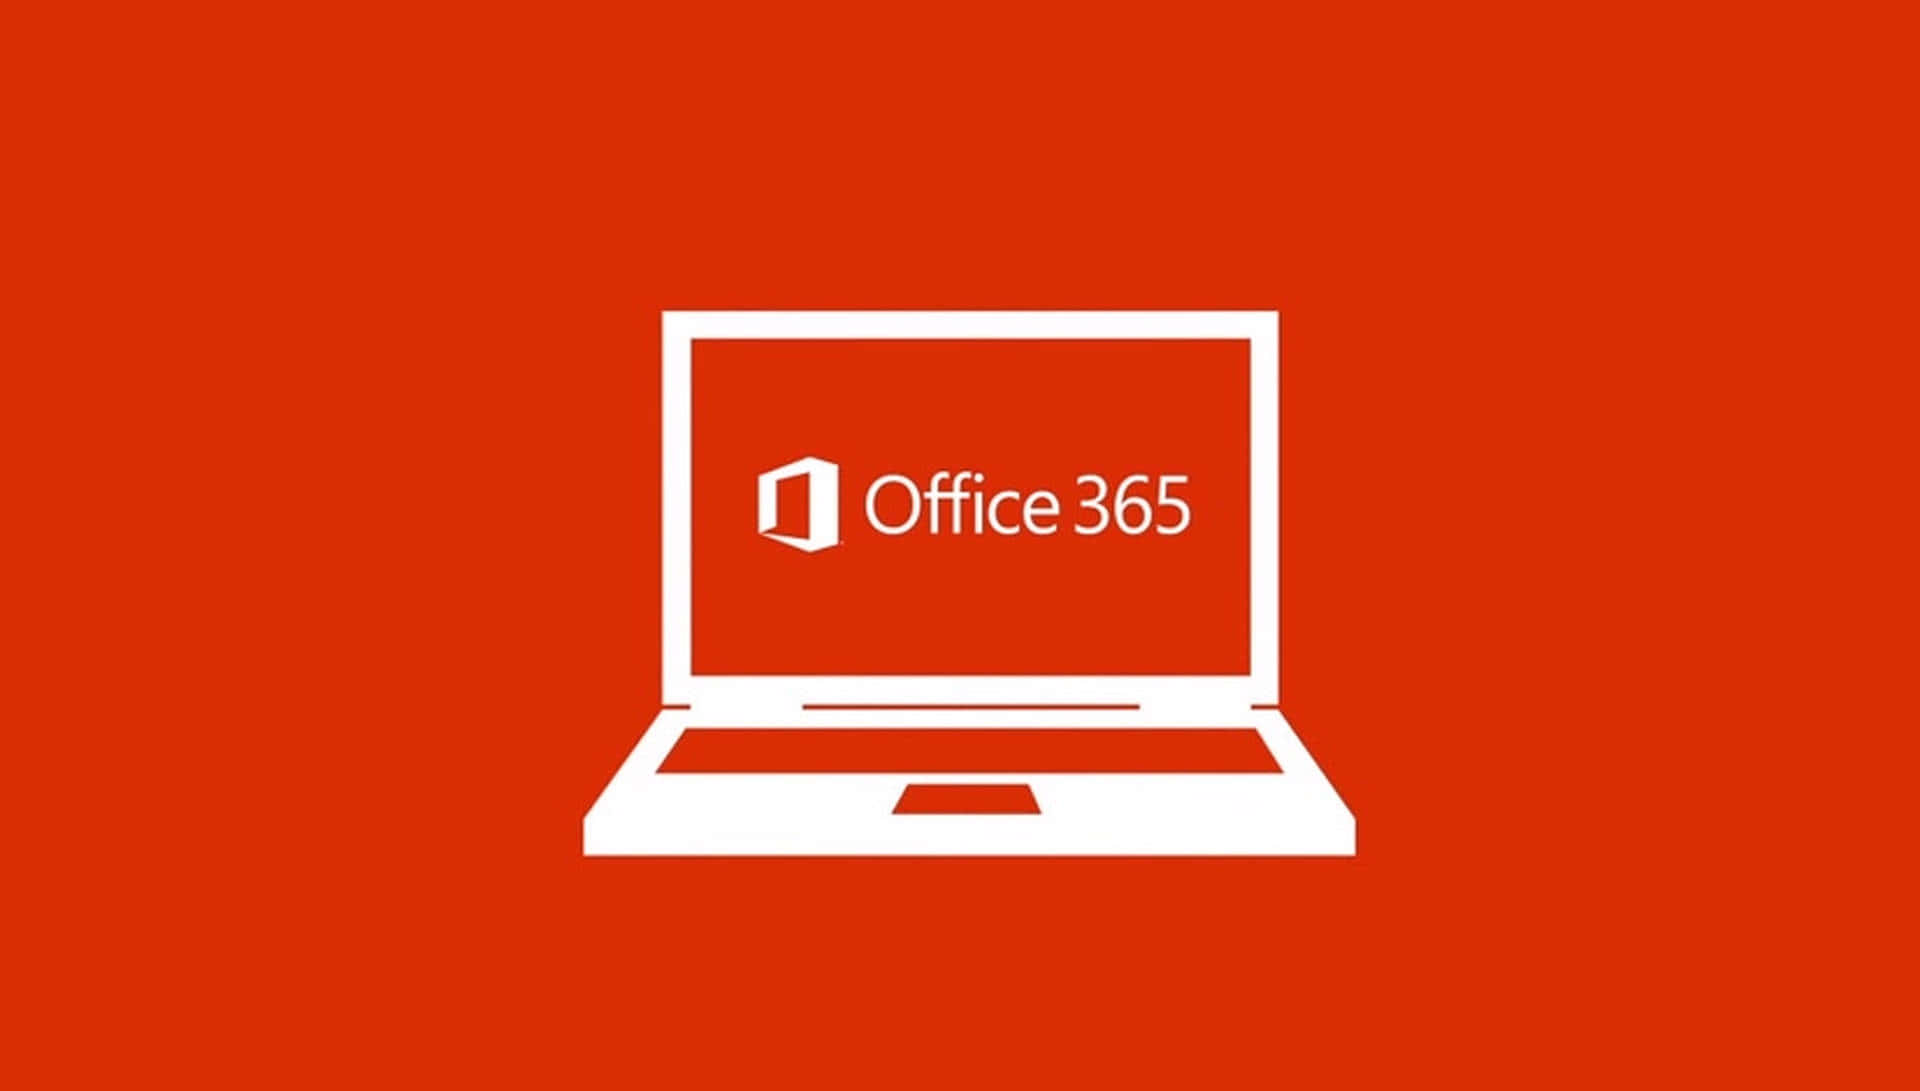 Logode Office 365 Sobre Un Fondo Rojo